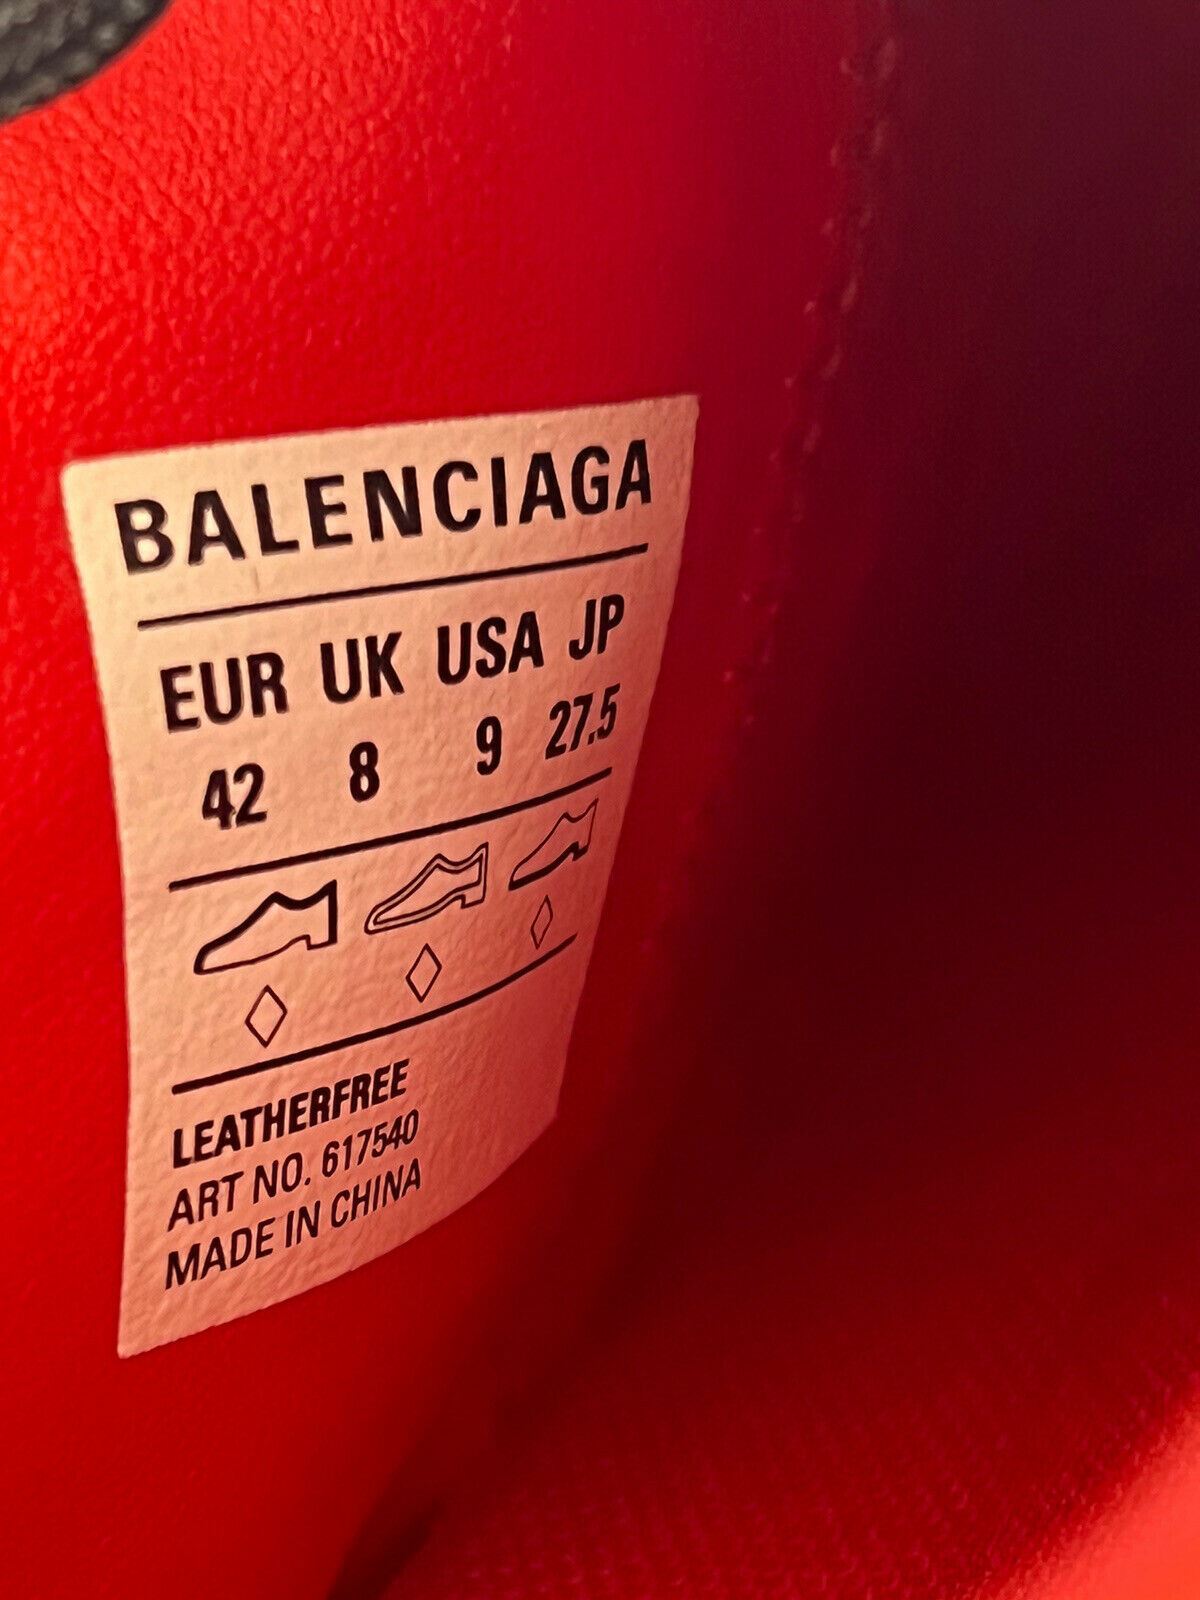 Мужские красные/черные кроссовки Zen Zen за 550 долларов США 9 США (42 евро) 617540 